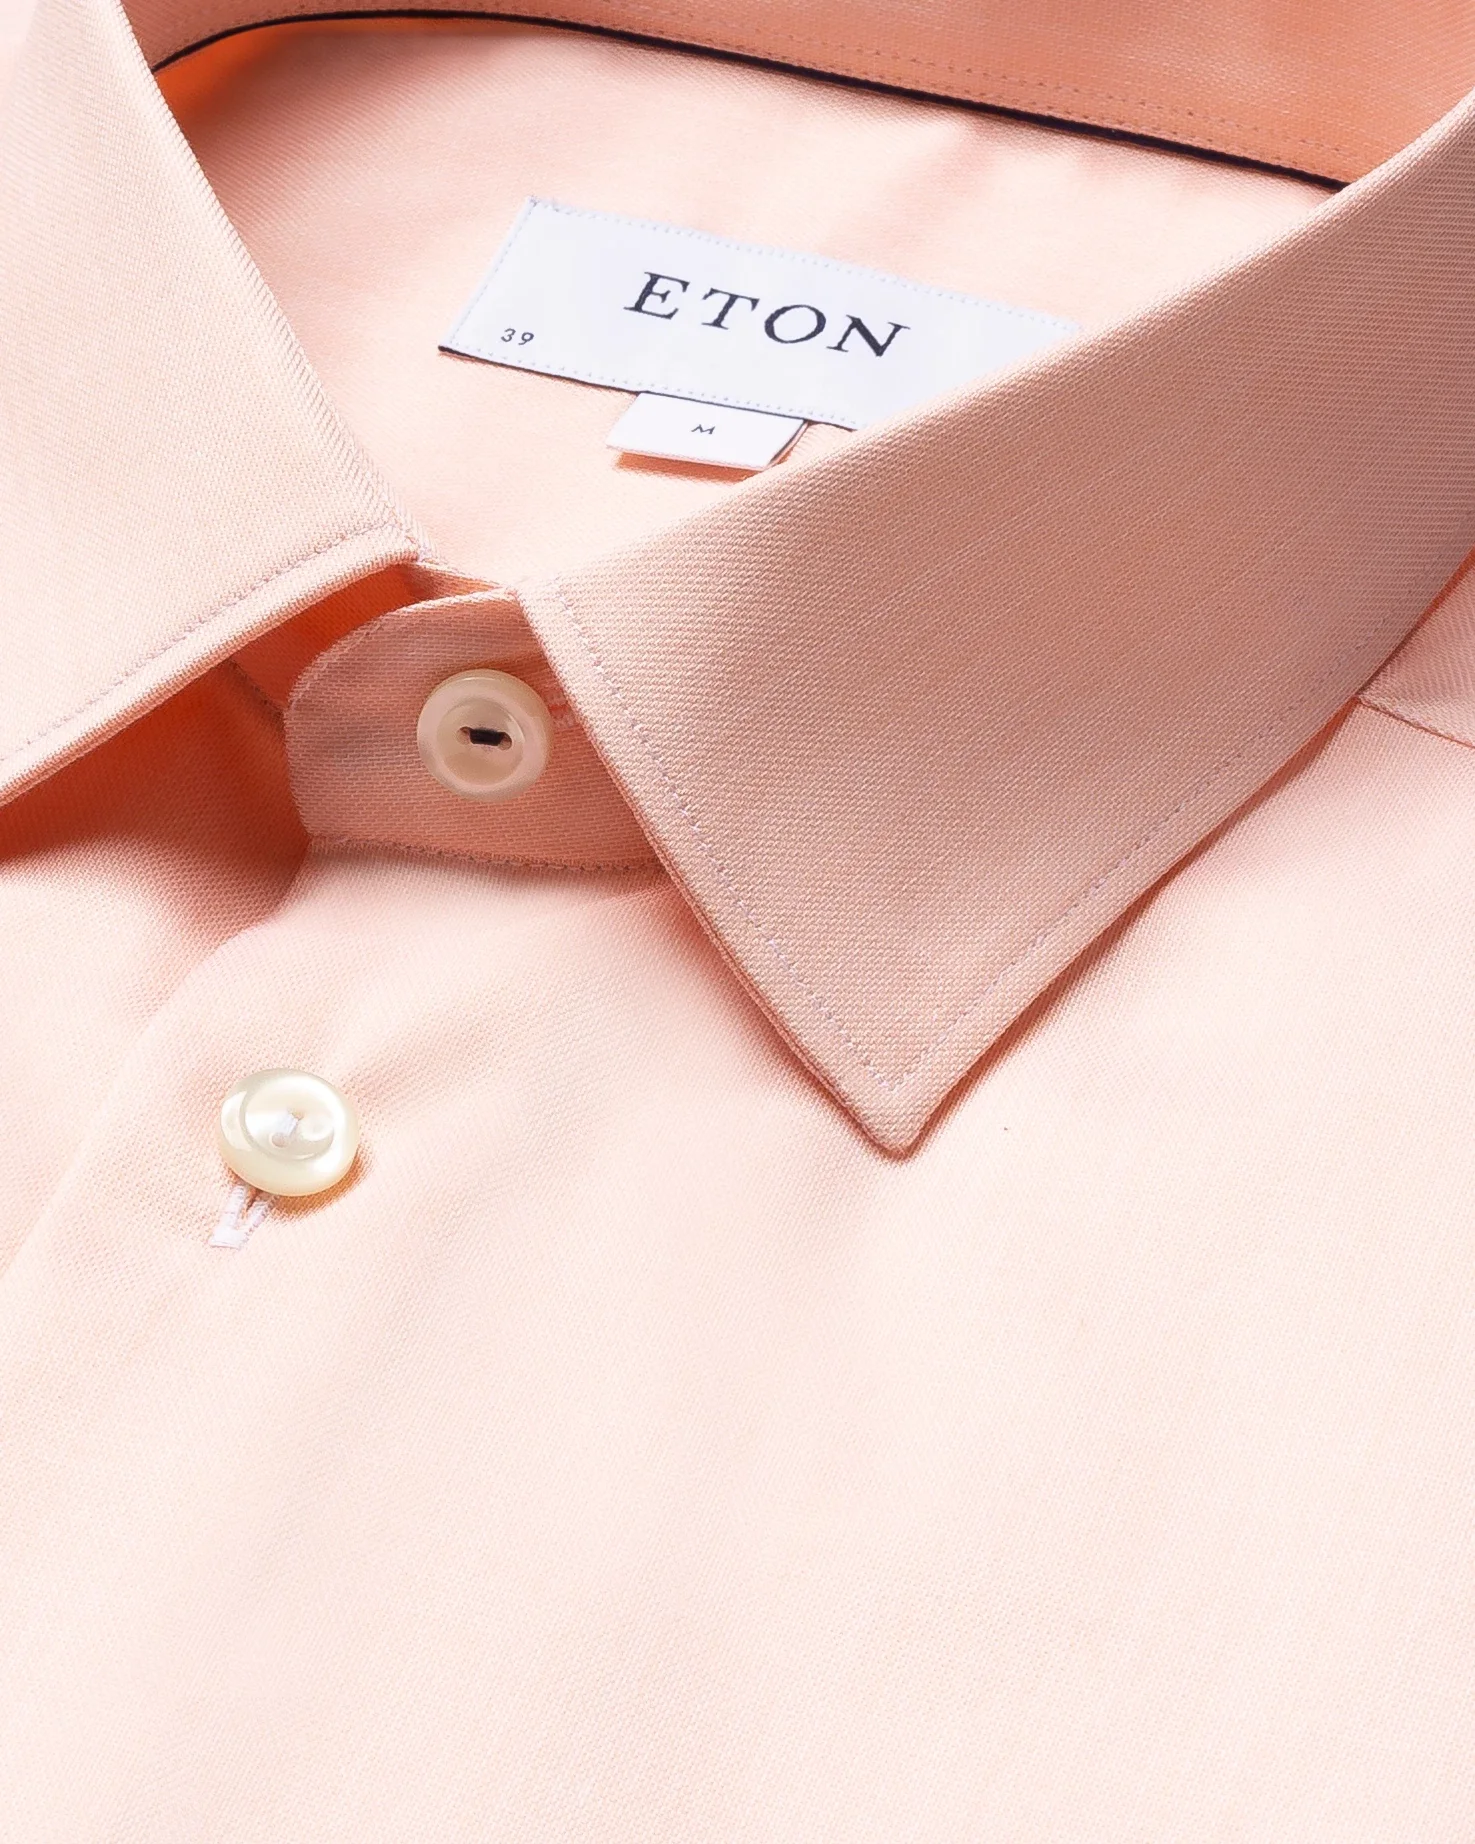 Eton - orange twill shirt navy piping pointed